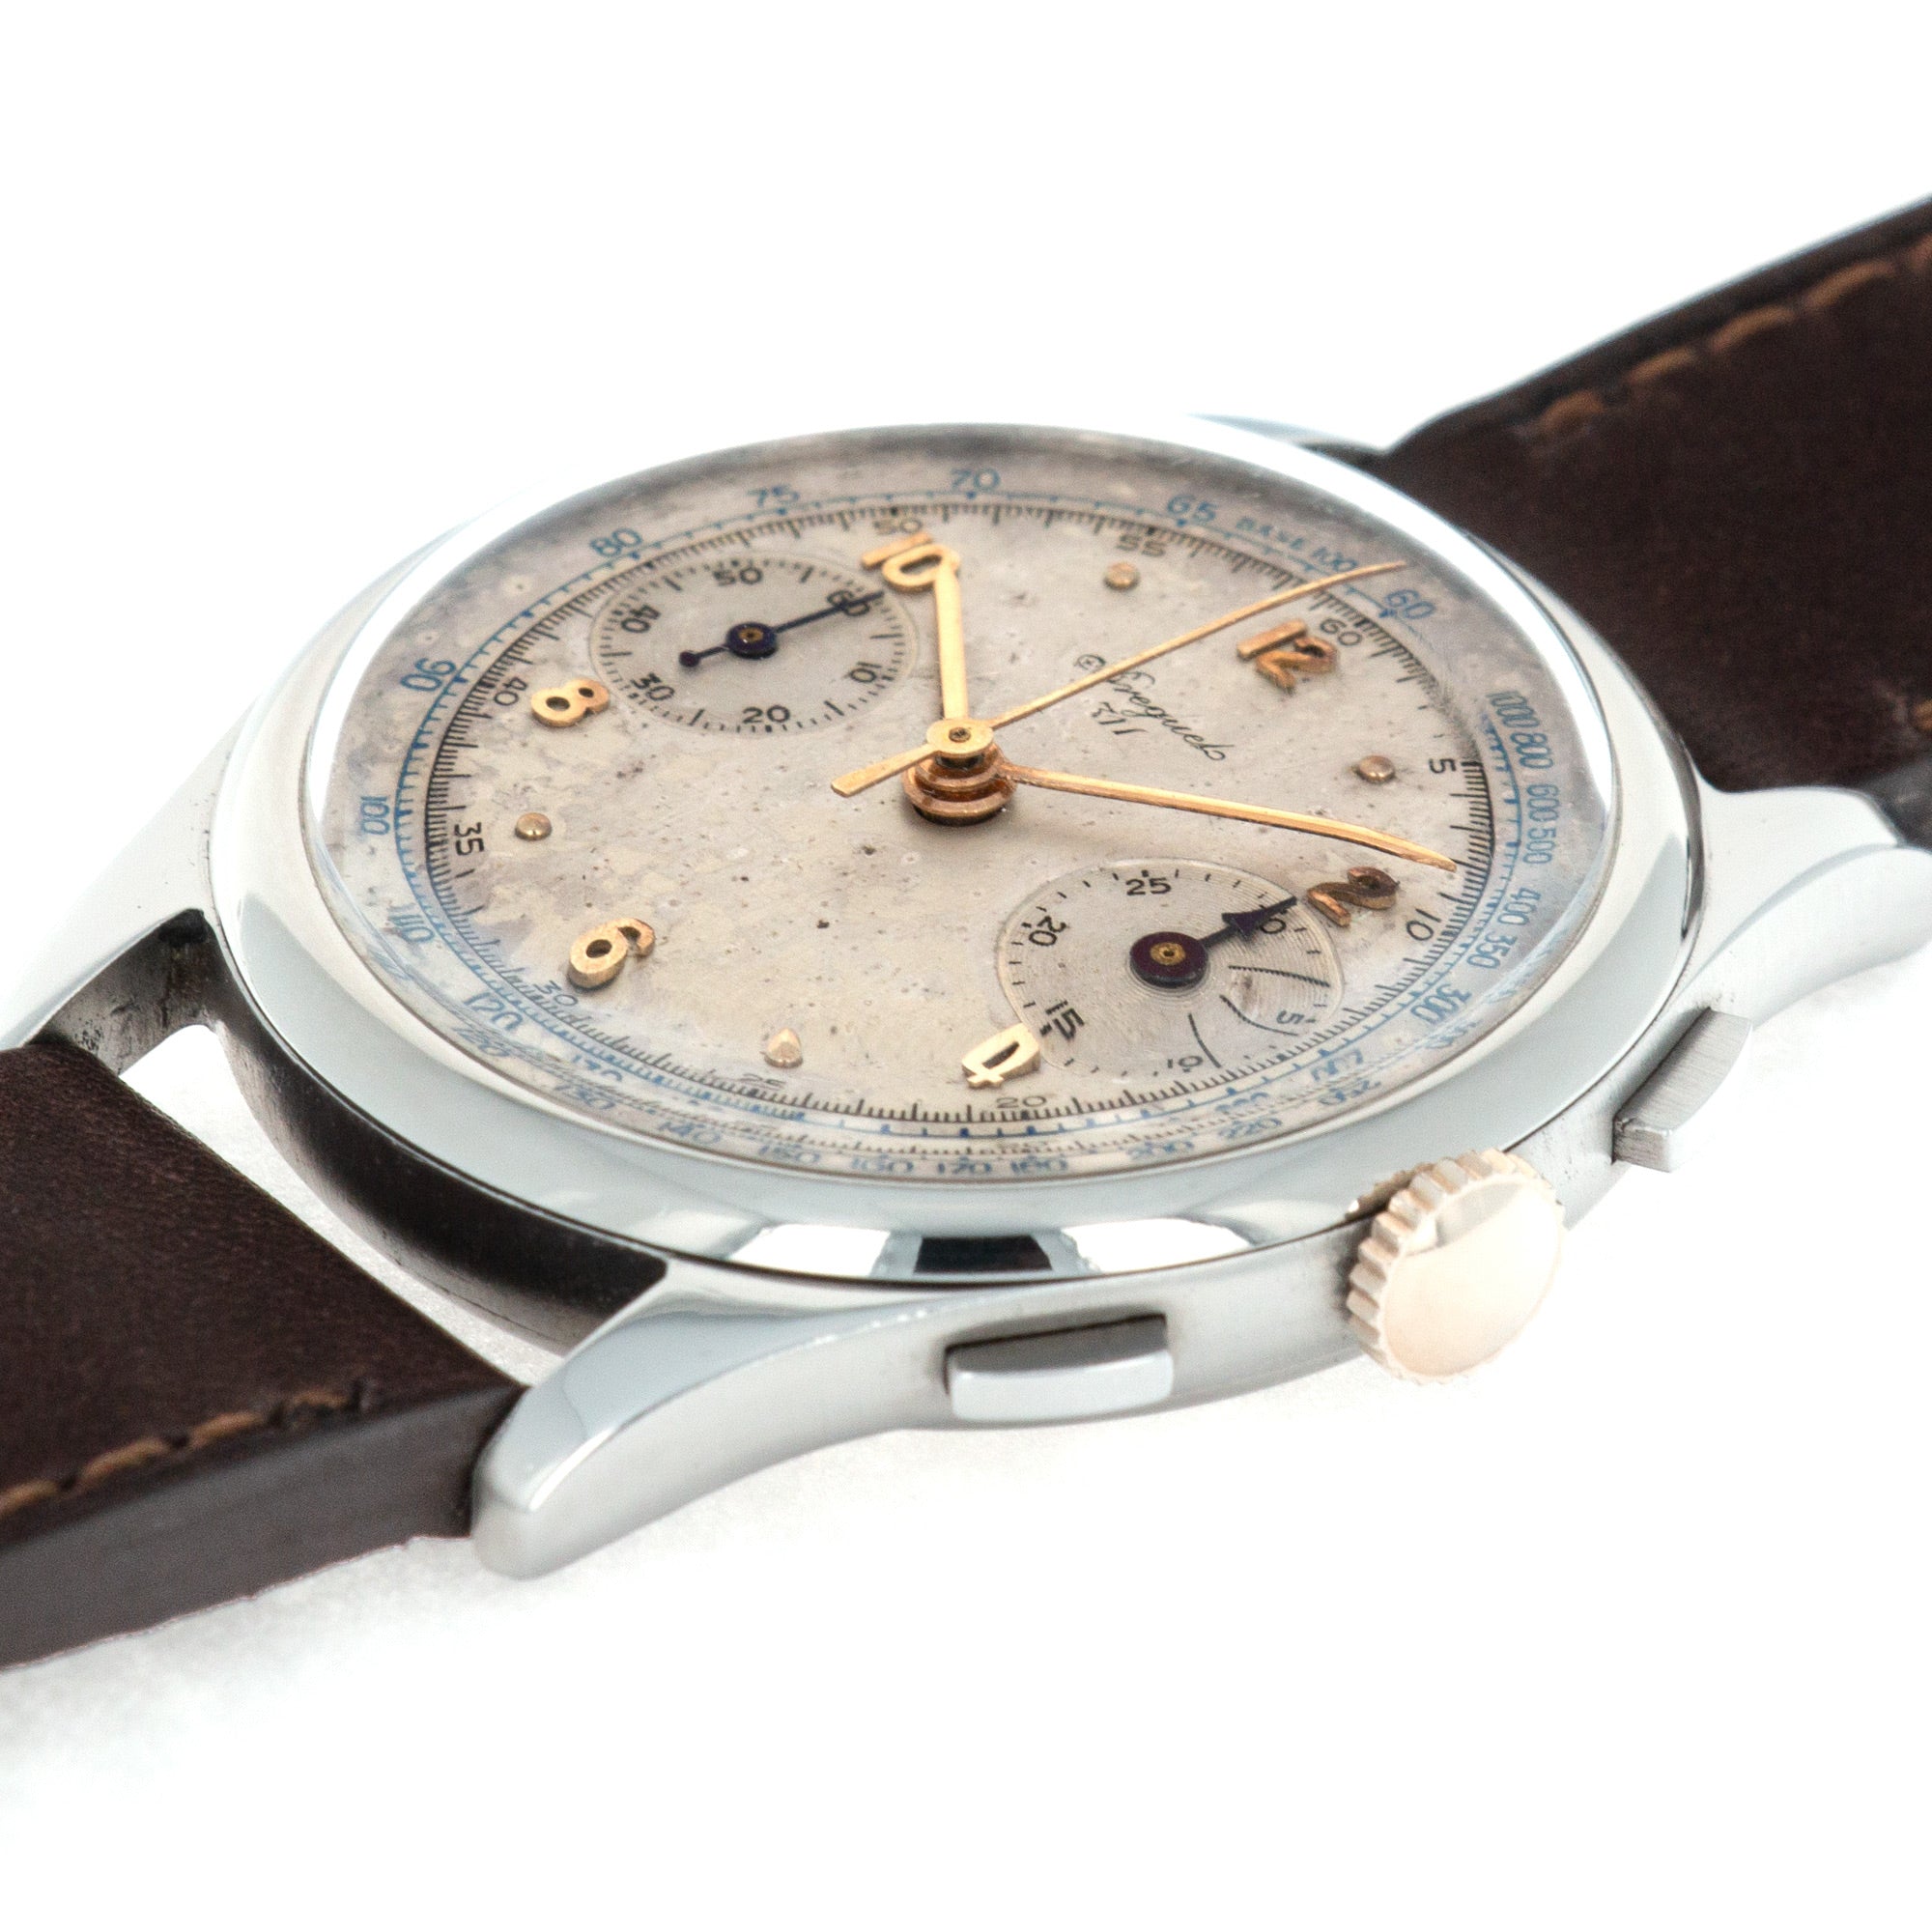 Breguet - Breguet Steel Chronograph 311 Watch, 1940s - The Keystone Watches